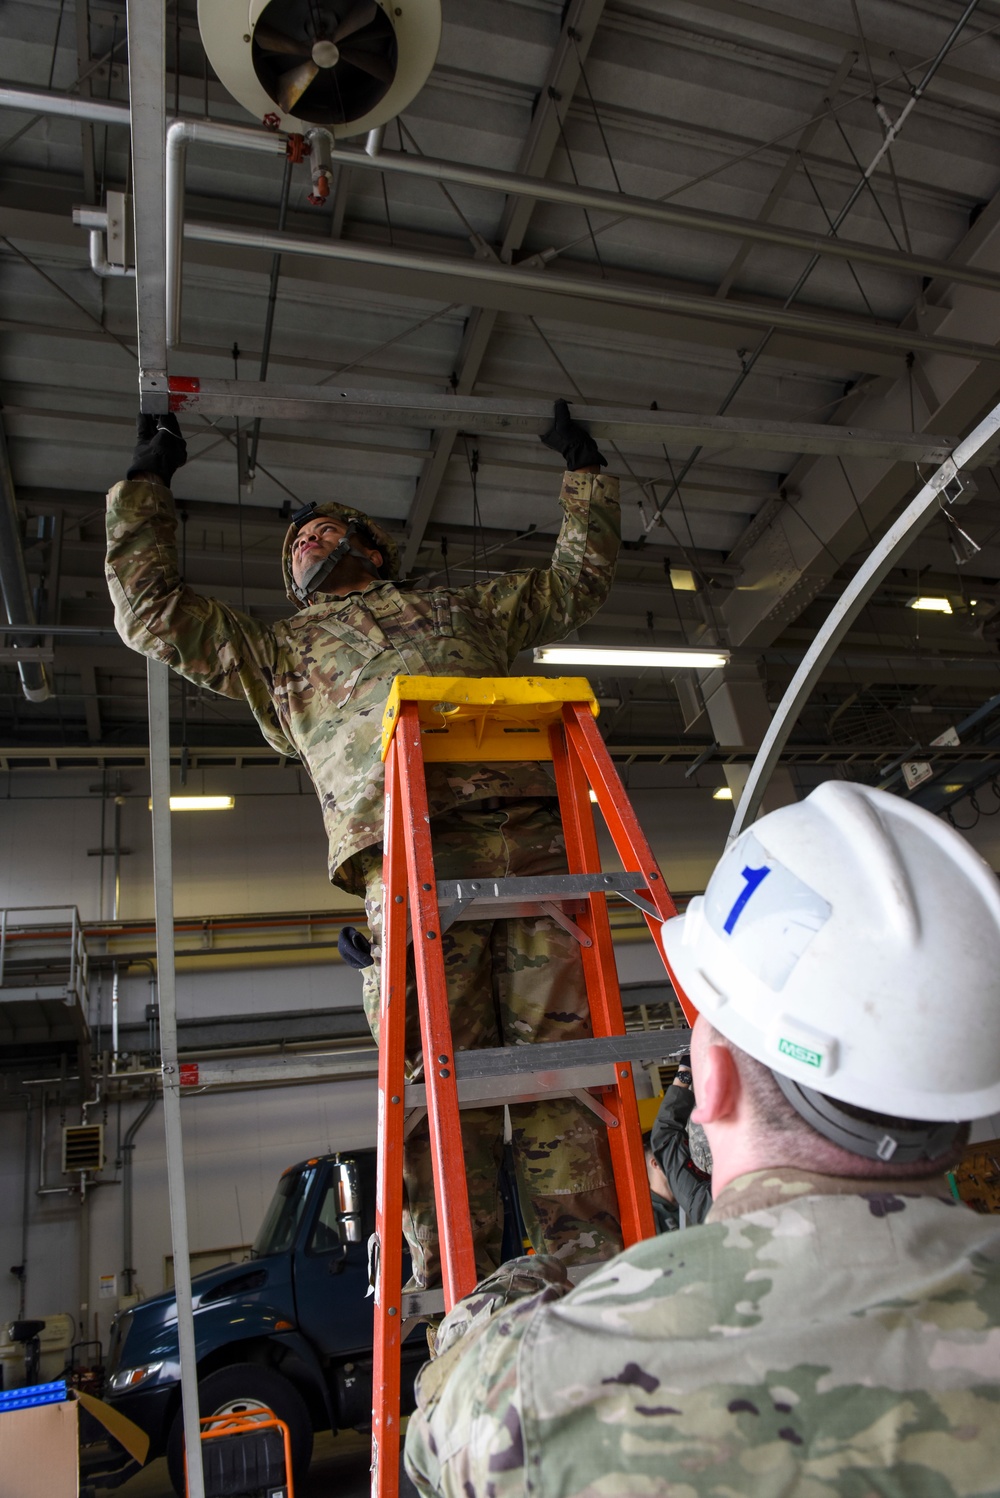 Multi-capable Airmen continue Agile Combat Employment training